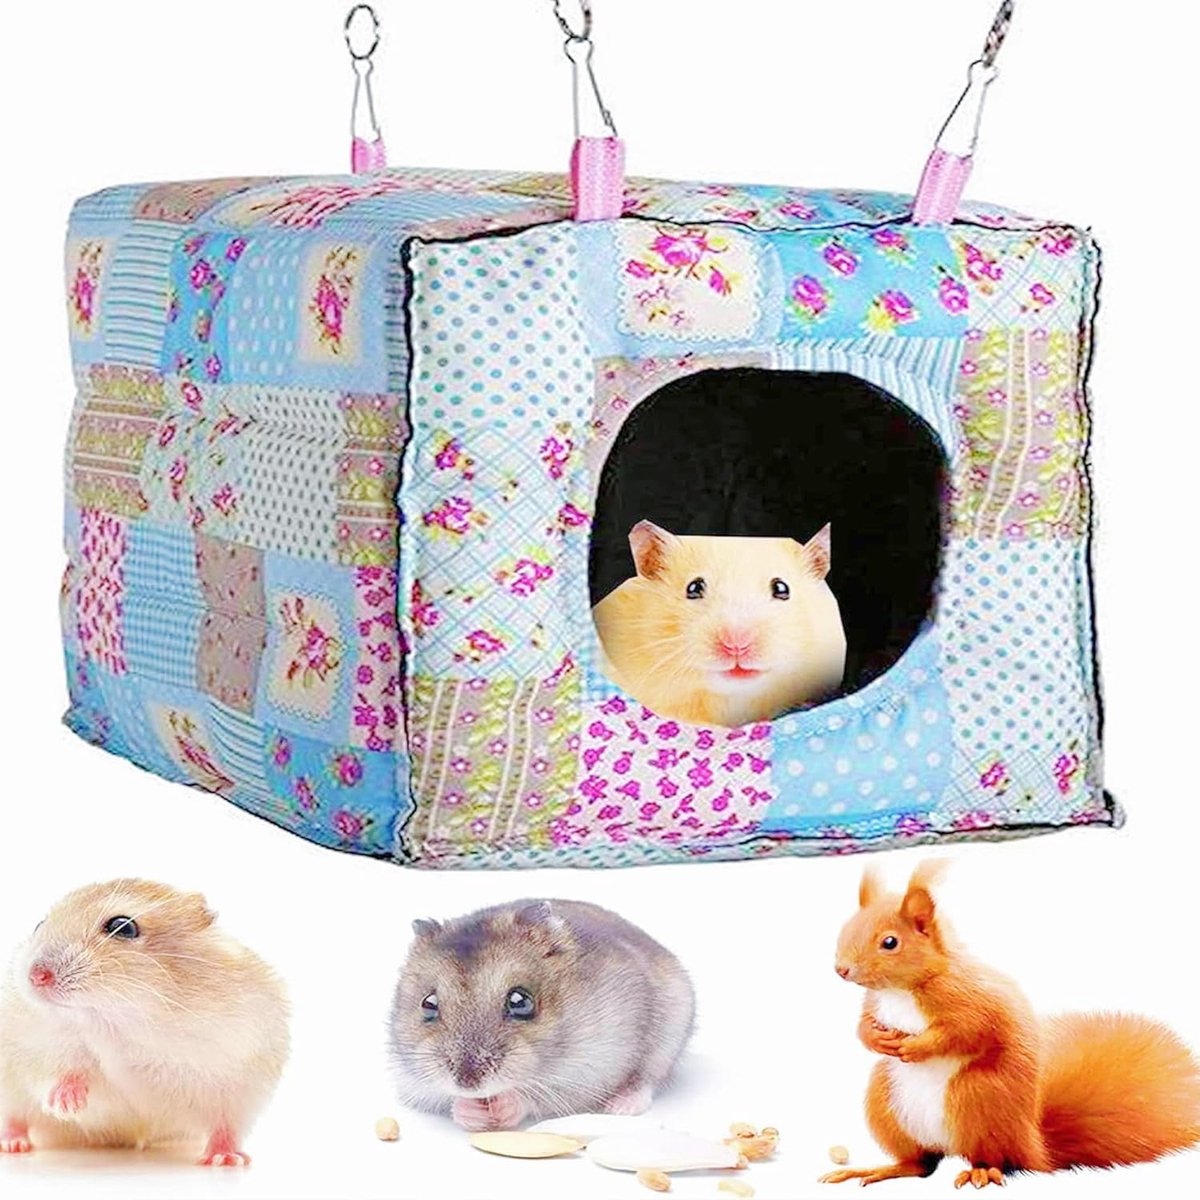 Kattennest, Creatief Luxe Warm Zacht Hangmat Voor Klein Dier Ferret Rat Cavia Hamster Chinchilla Eekhoorn Totoro Konijn Kooi Huis Bed House Slaapzak (blauw)